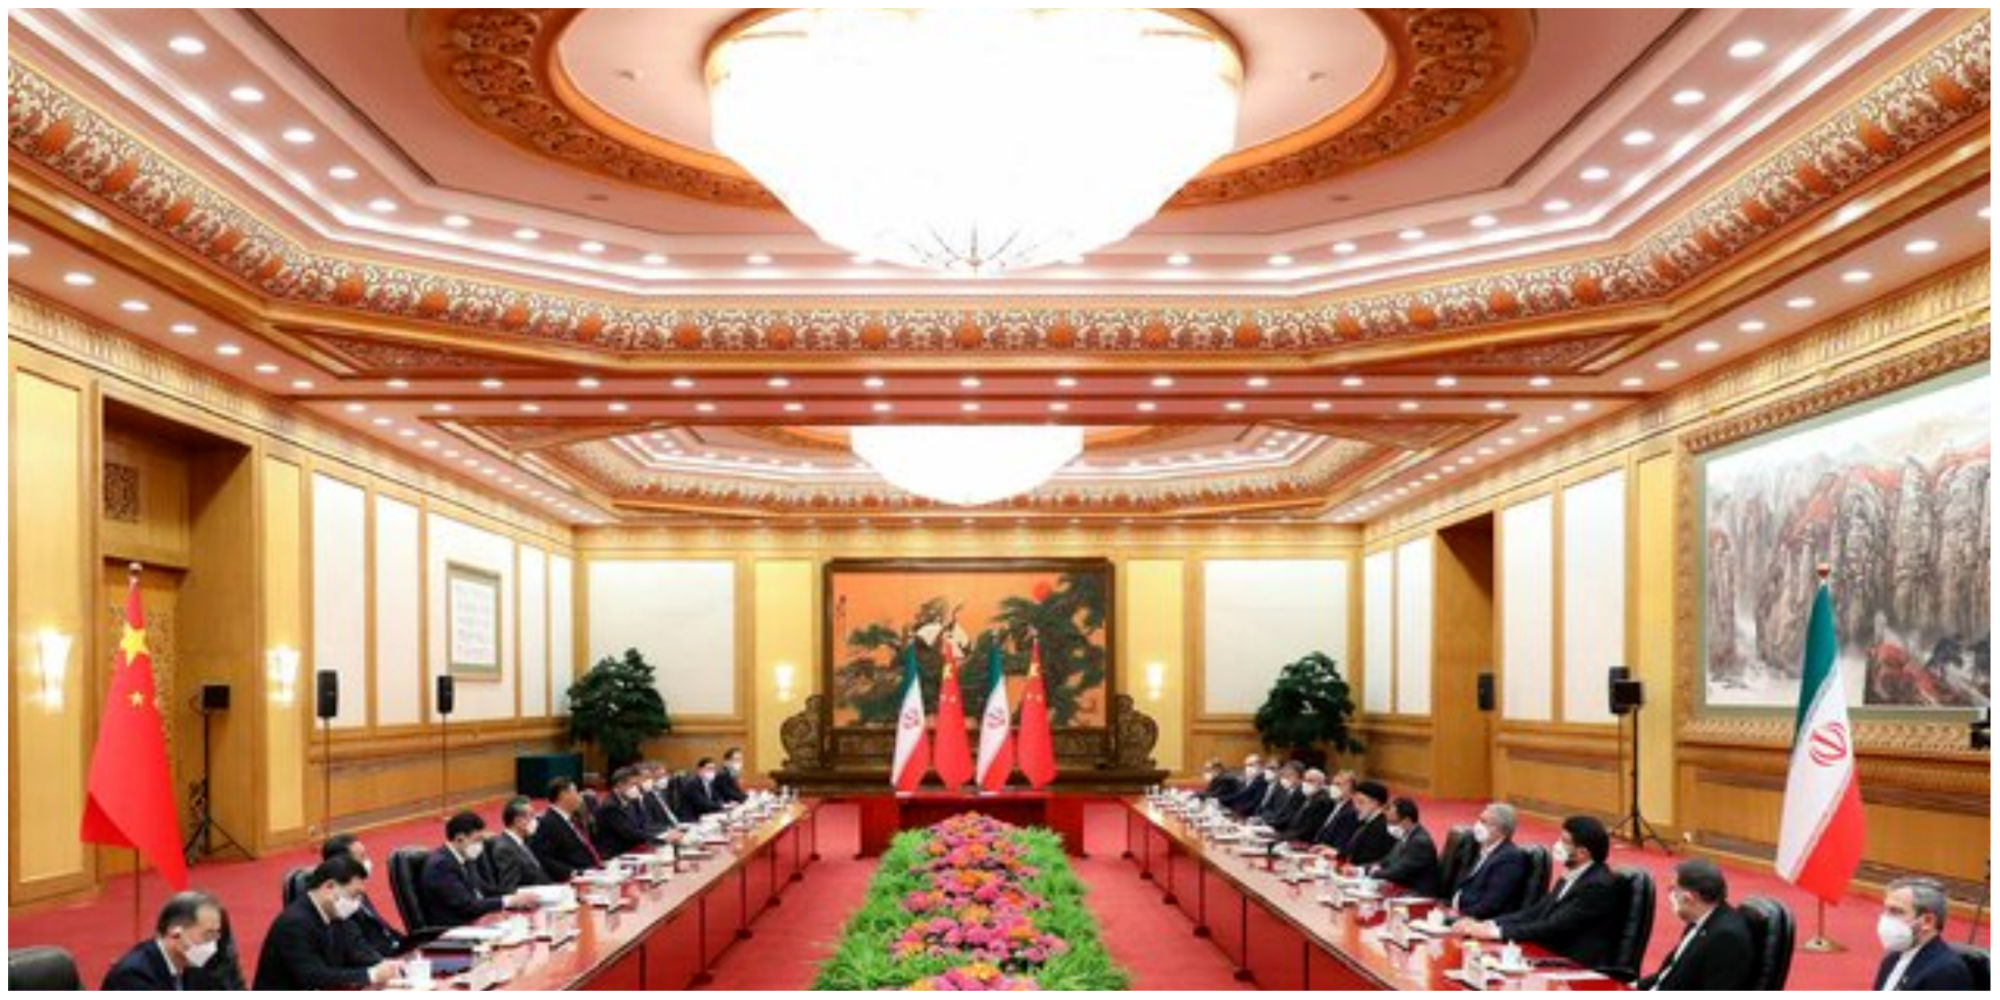 رئیسی: ایران و چین دوستان روزهای سخت هستند/ شی جینپینگ: از تمامیت ارضی ایران حمایت می کنیم